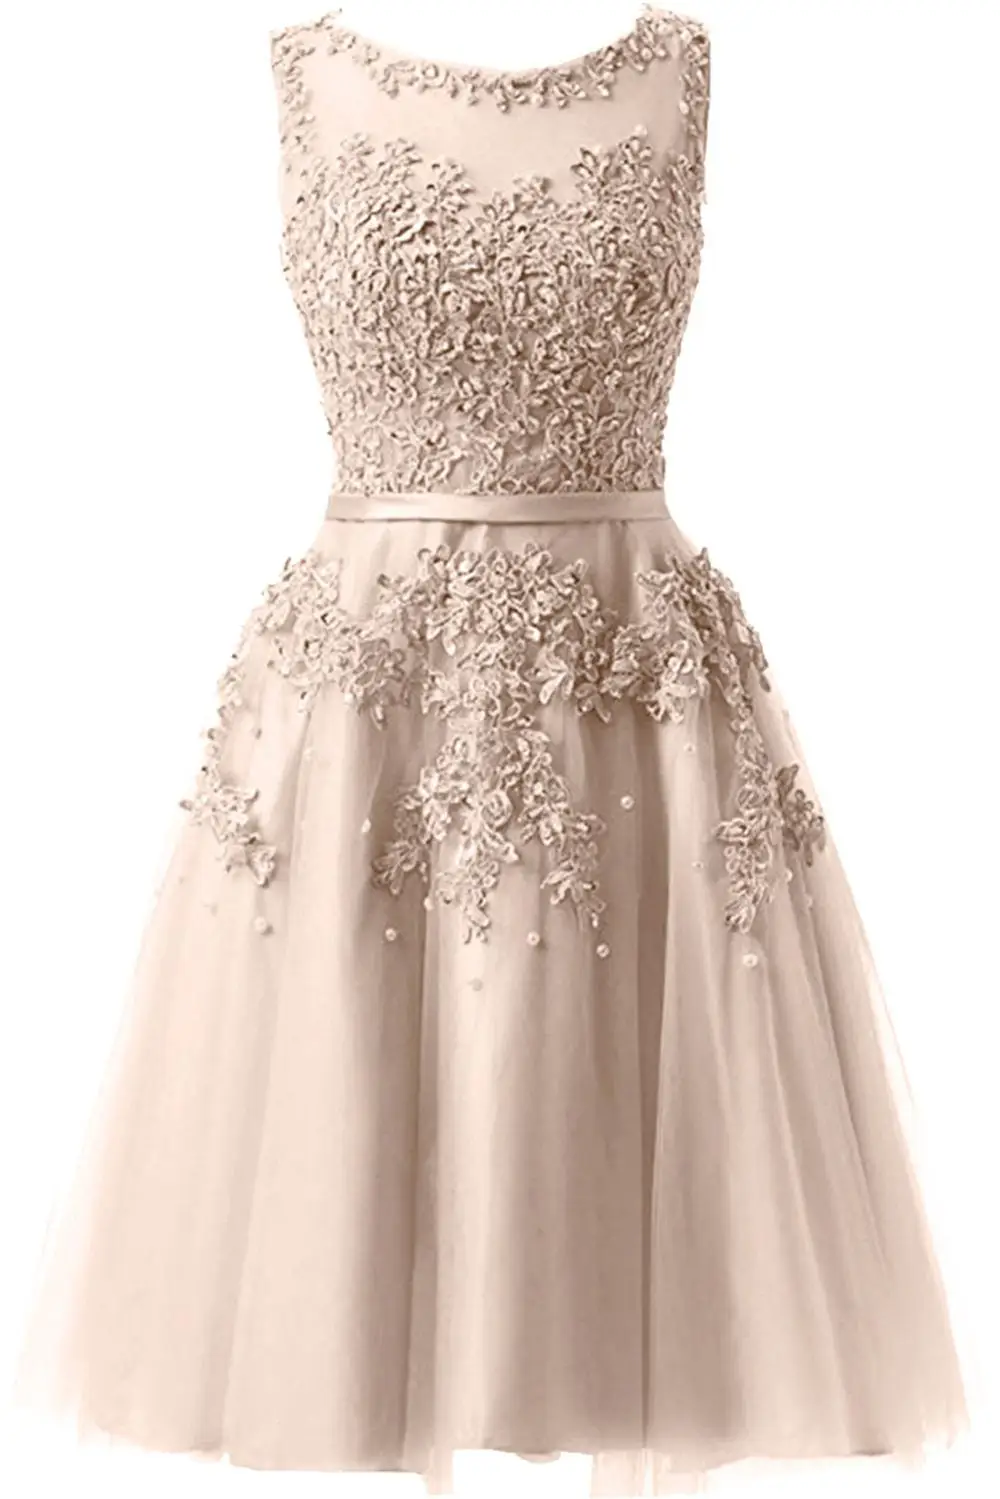 YiiYa/платье подружки невесты для девочек; большие размеры; Короткие вечерние платья розового и синего цвета; коллекция года; женское платье; vestido madrinha LX073 - Цвет: champagne